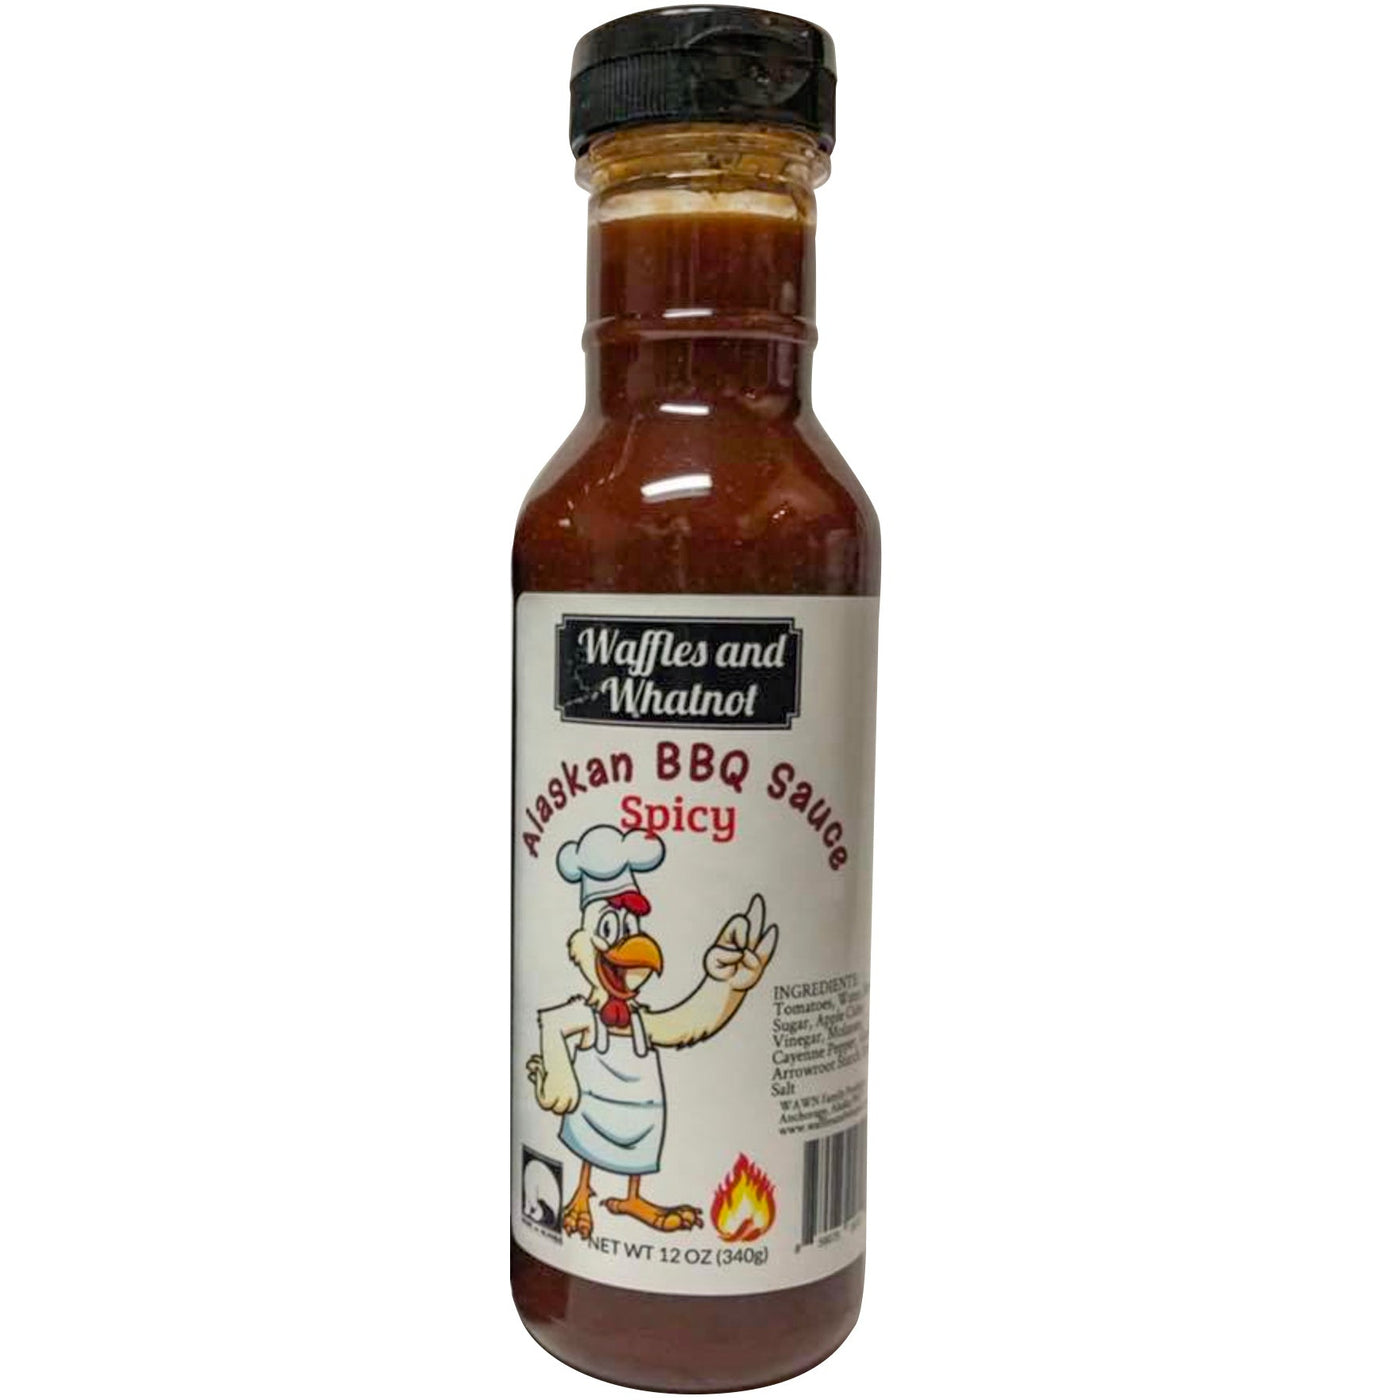 WAWN Spicy BBQ Sauce